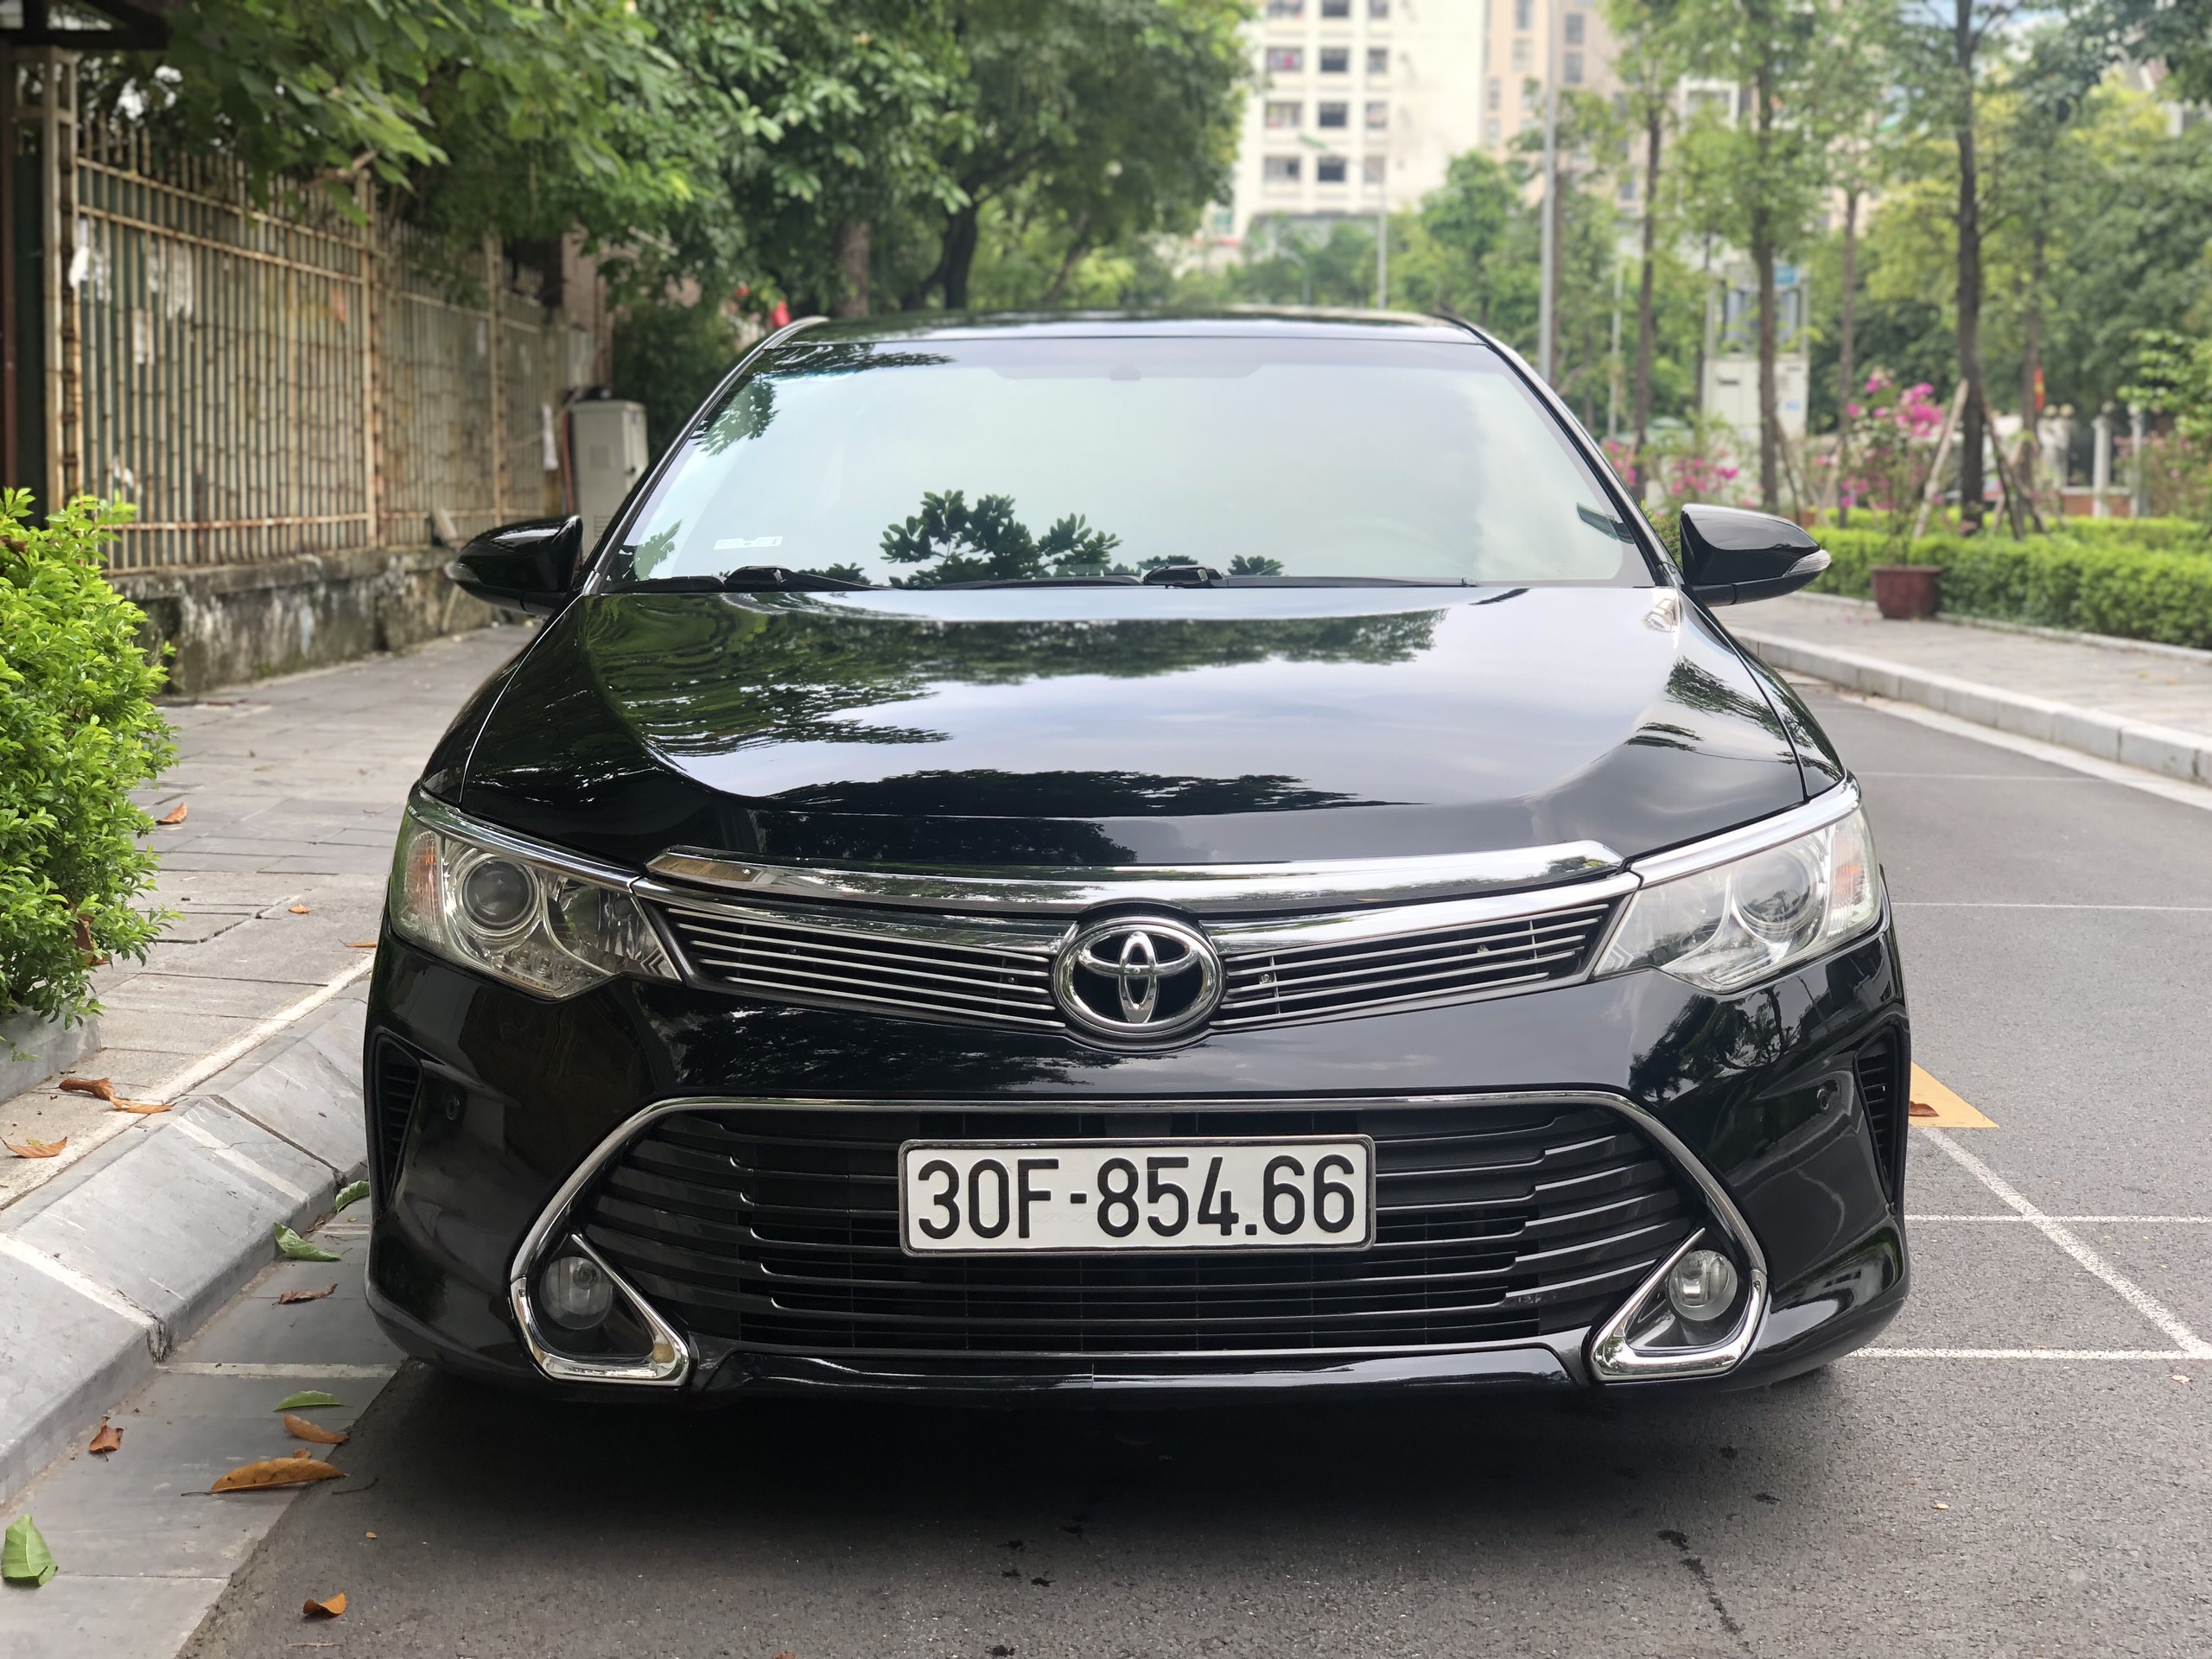 Lốp xe Toyota Camry Thông số và Bảng giá mới nhất  G7Autovn